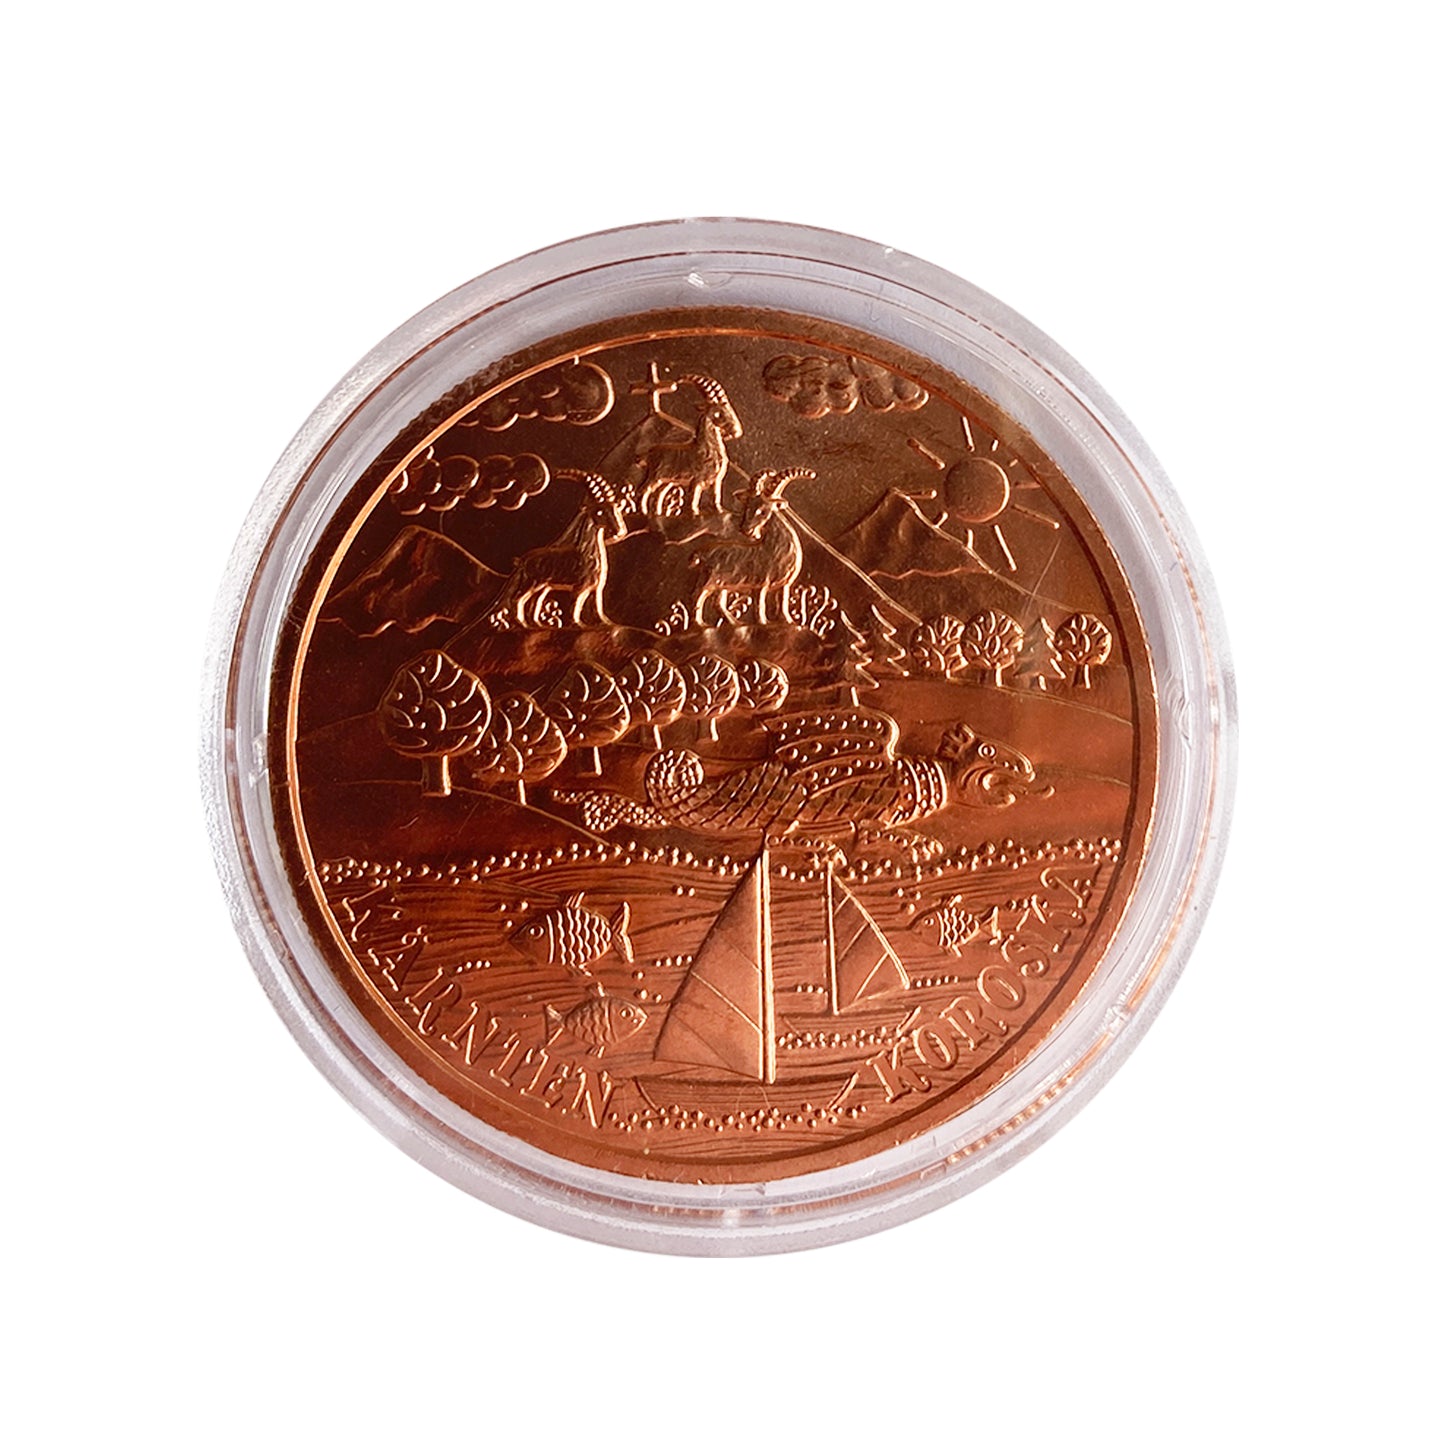 Austria - Moneda 10 euros cobre 2012 - Estado de Carintia